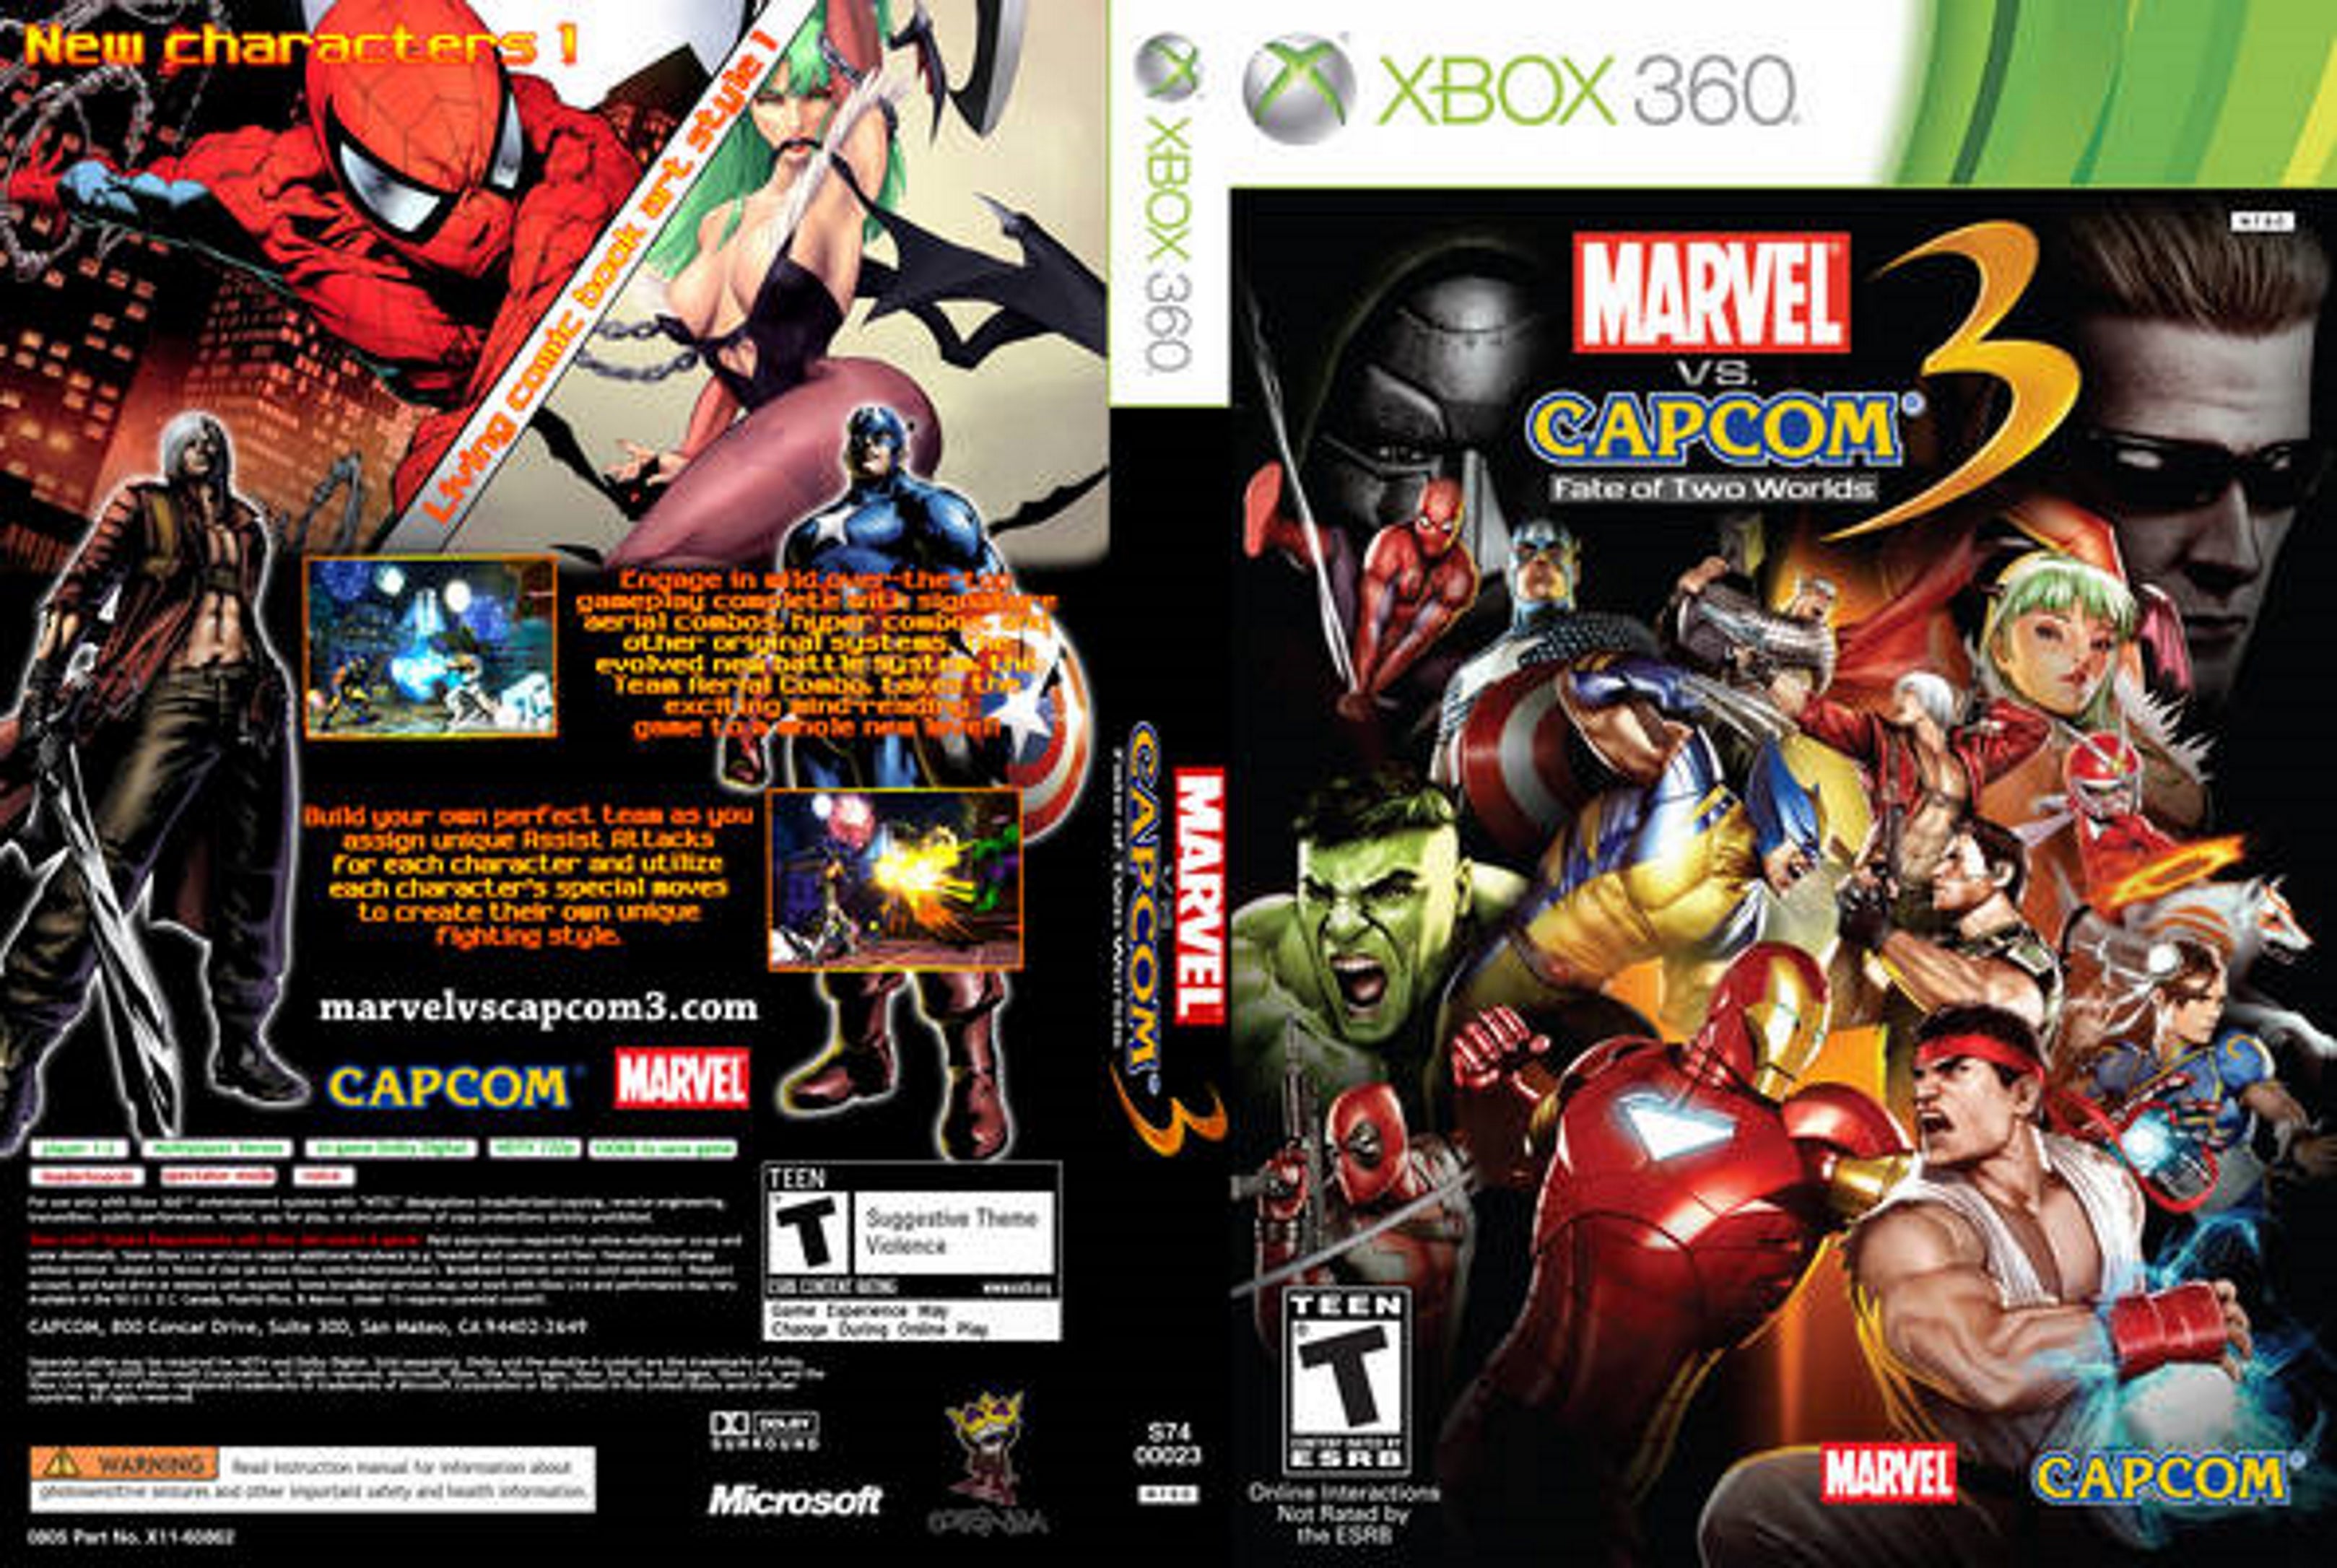 Marvel Vs. Capcom 3 Fate Of Two Worlds - Xbox 360 em Promoção na